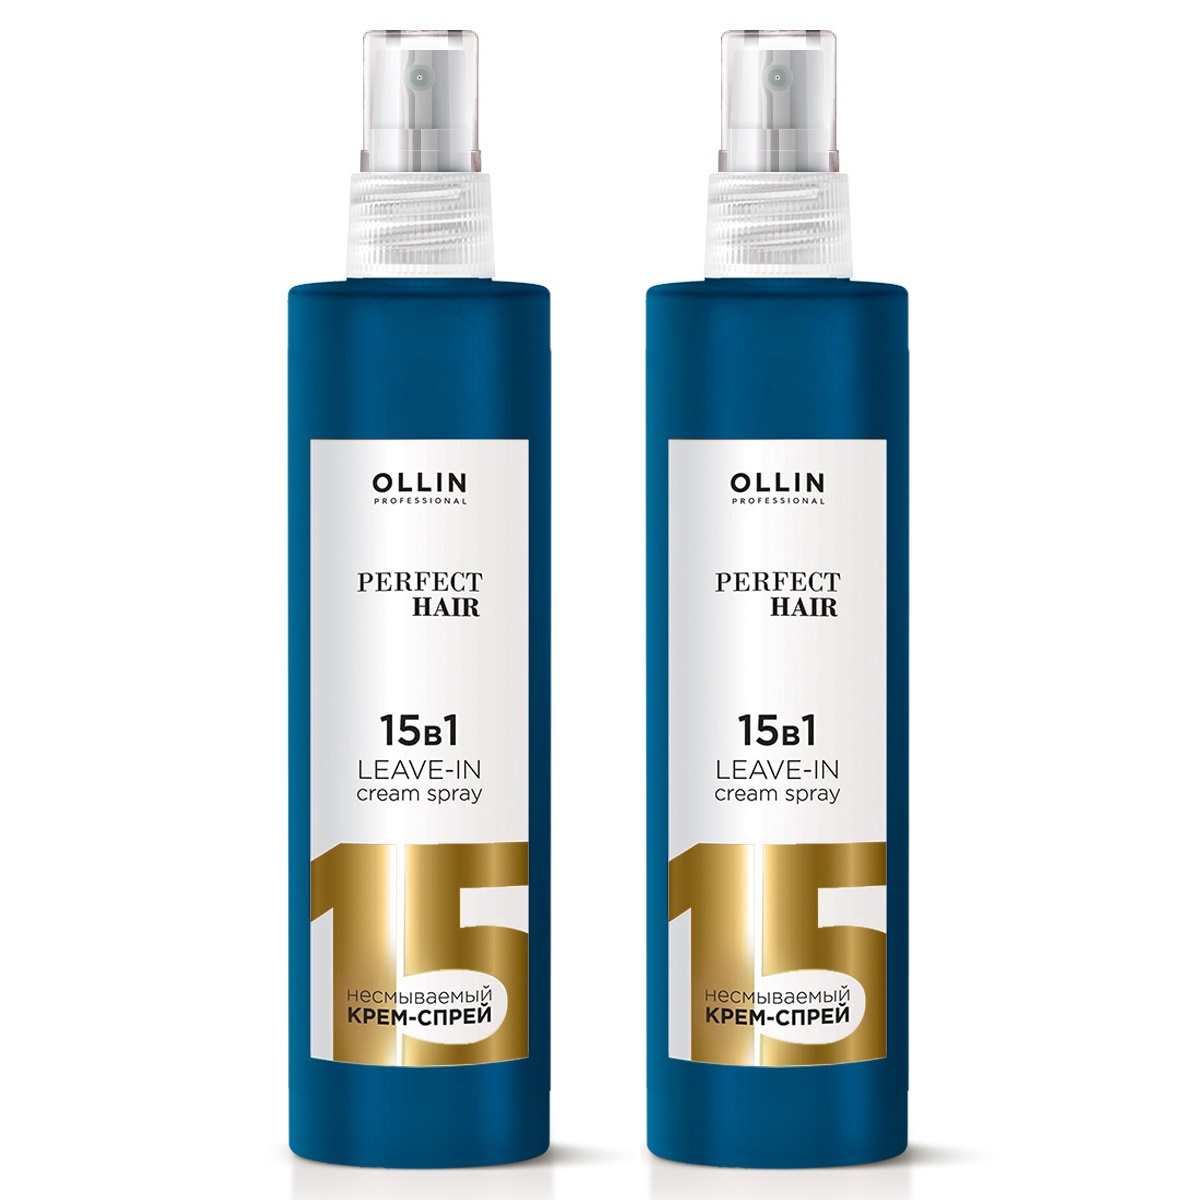 Крем-спрей для волос Ollin Professional Perfect Hair 15 в 1 несмываемый 250 мл 2 шт жена лейтенанта коломбо